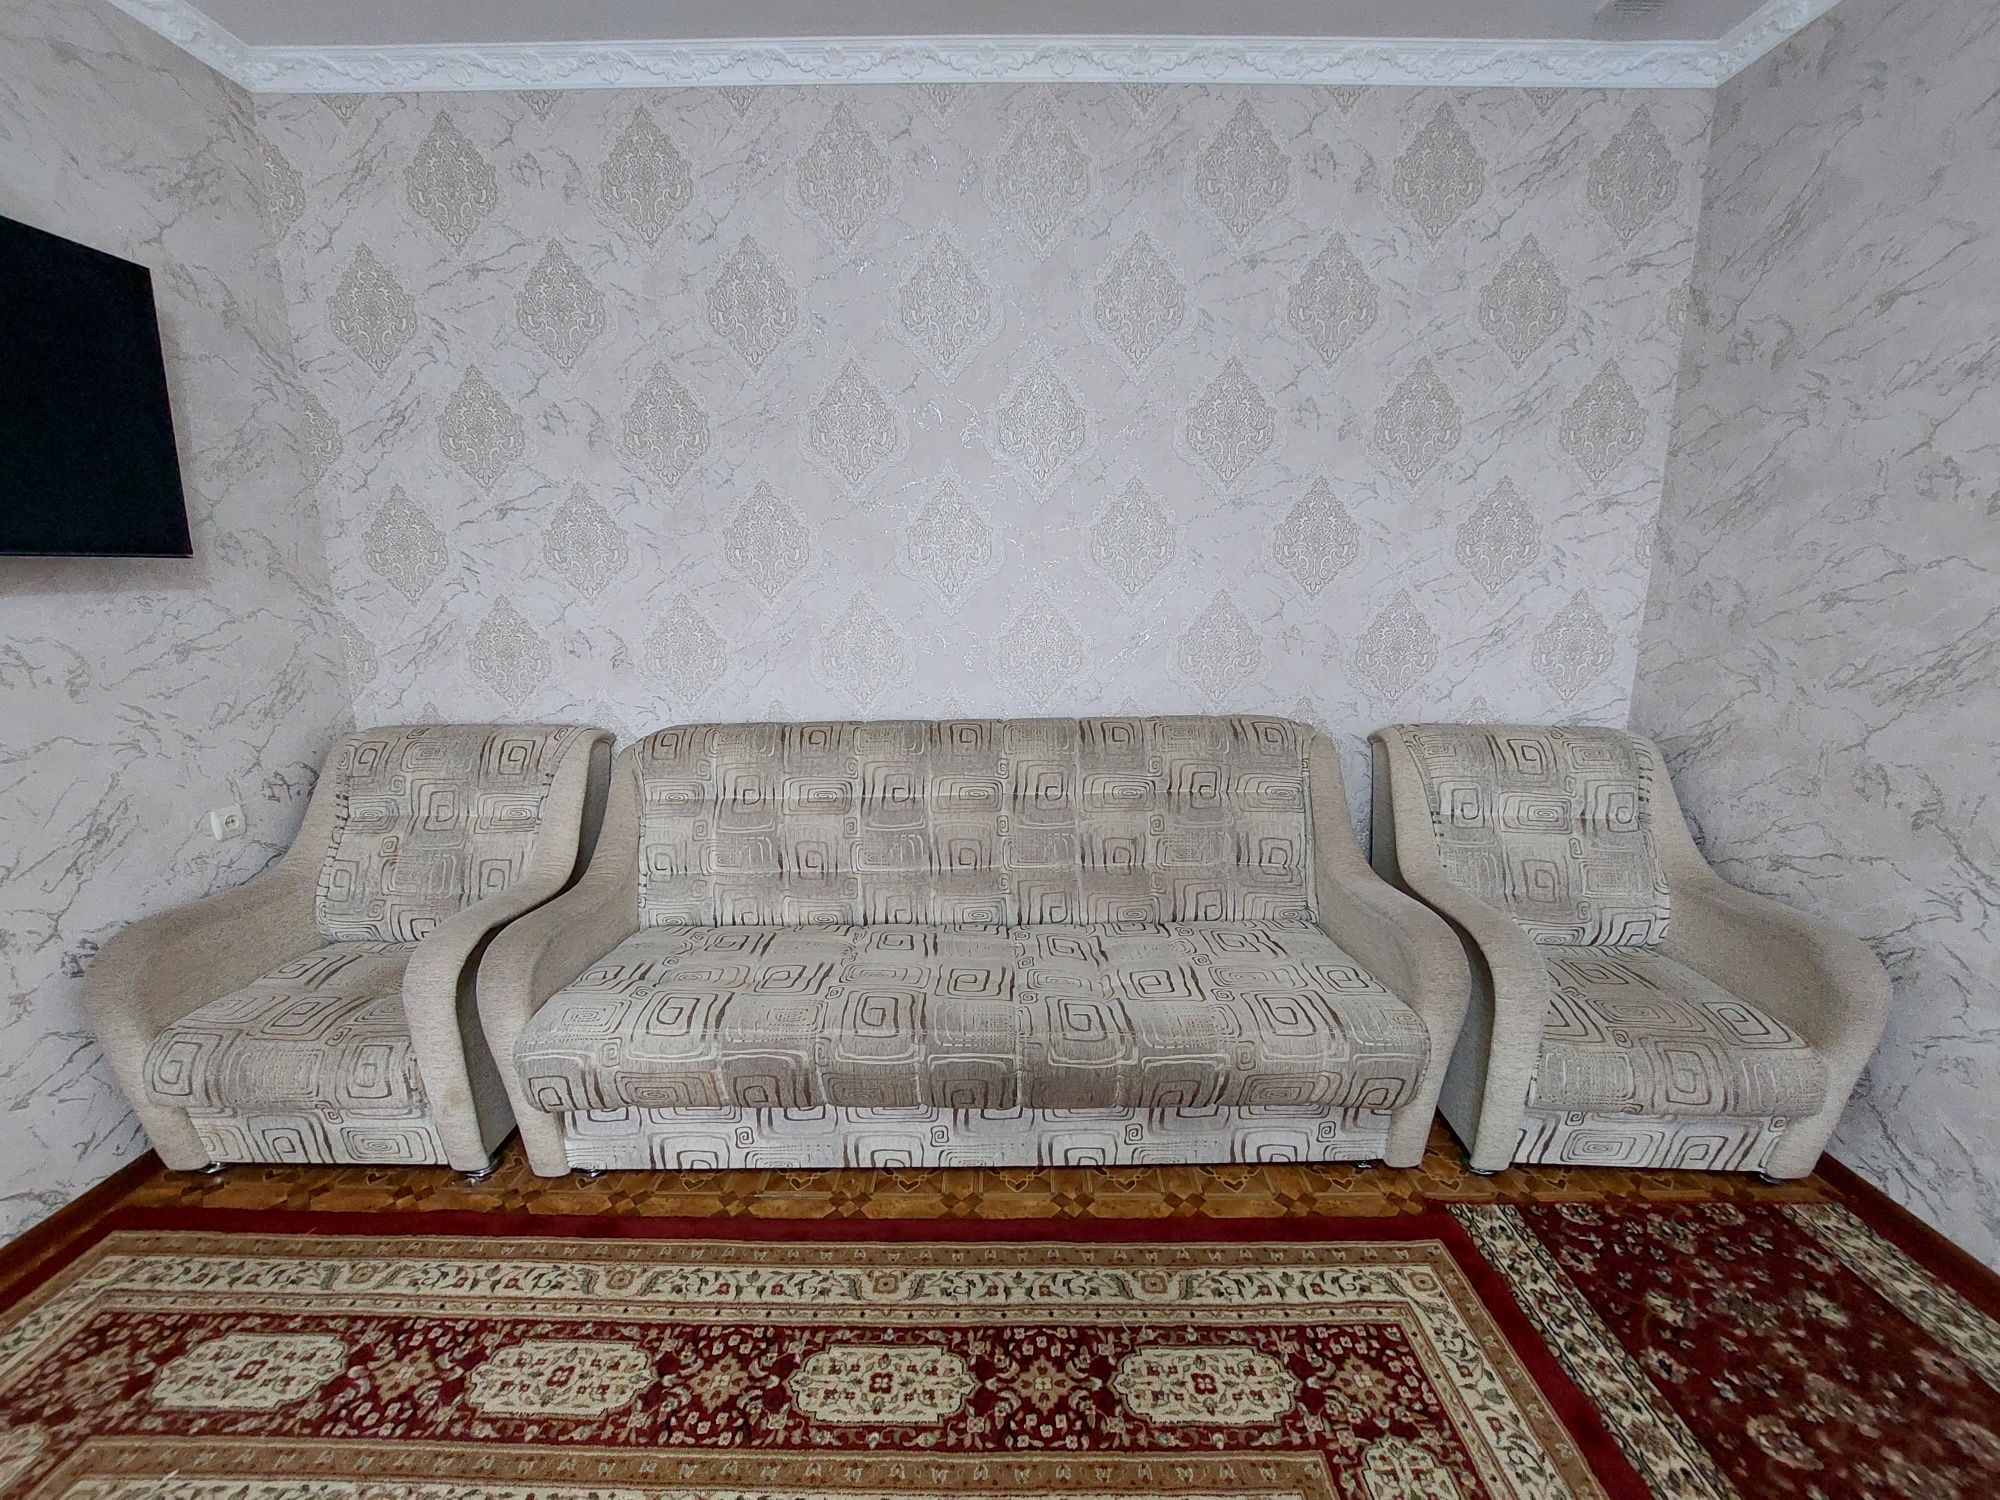 Продам диван с двумя креслами